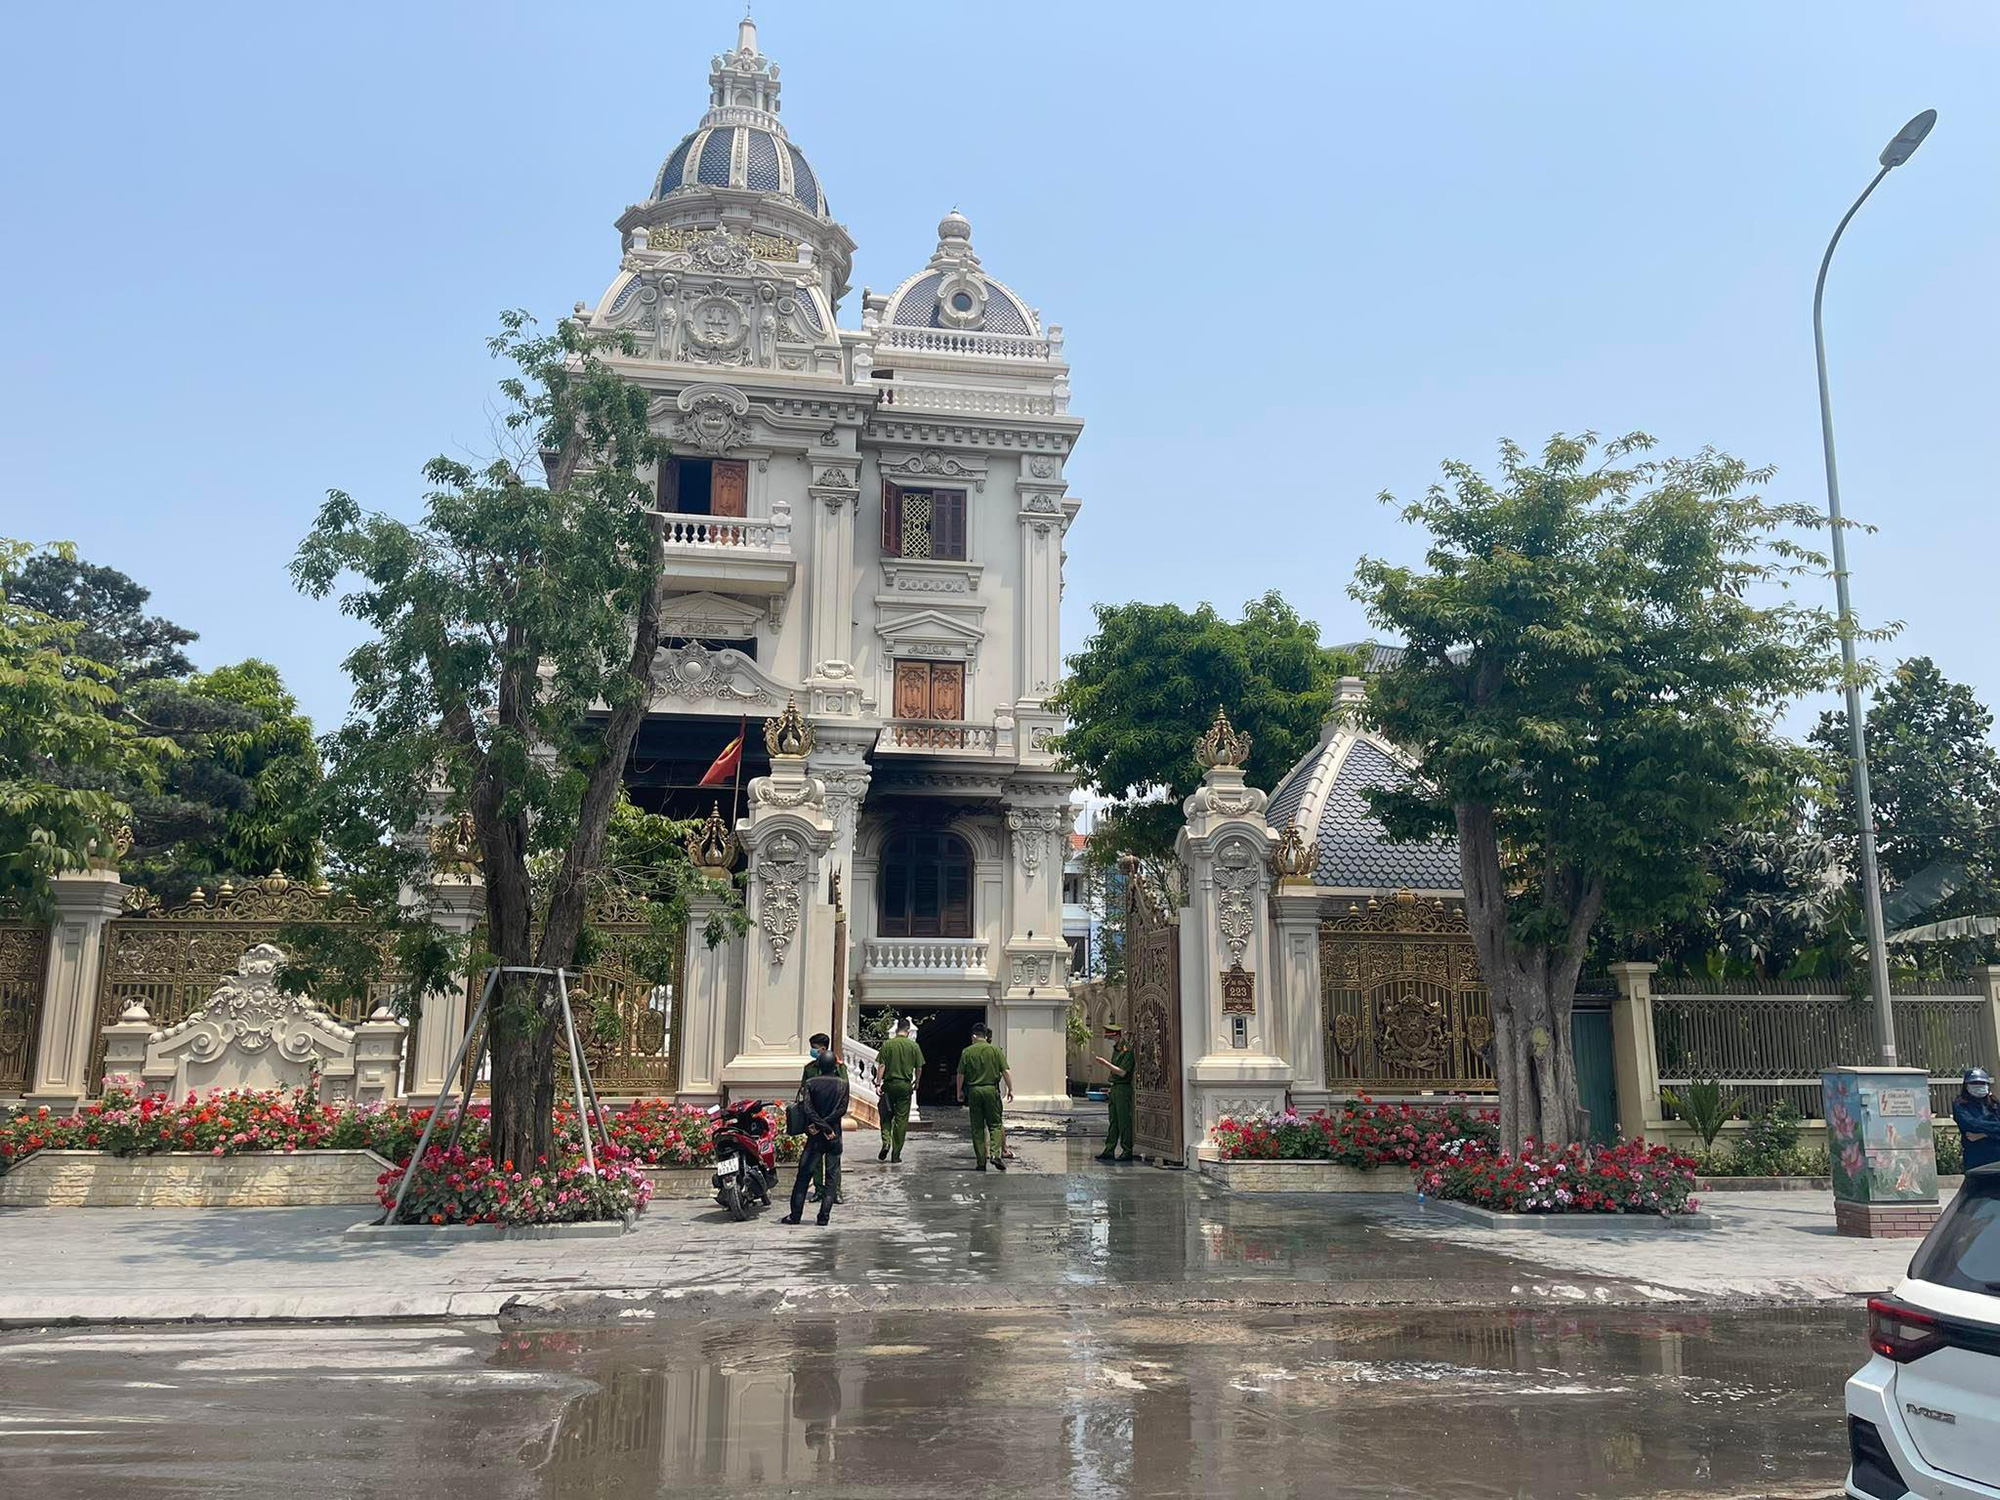 Hiện trường vụ cháy biệt thự sang trọng của đại gia ở Quảng Ninh - Ảnh 7.